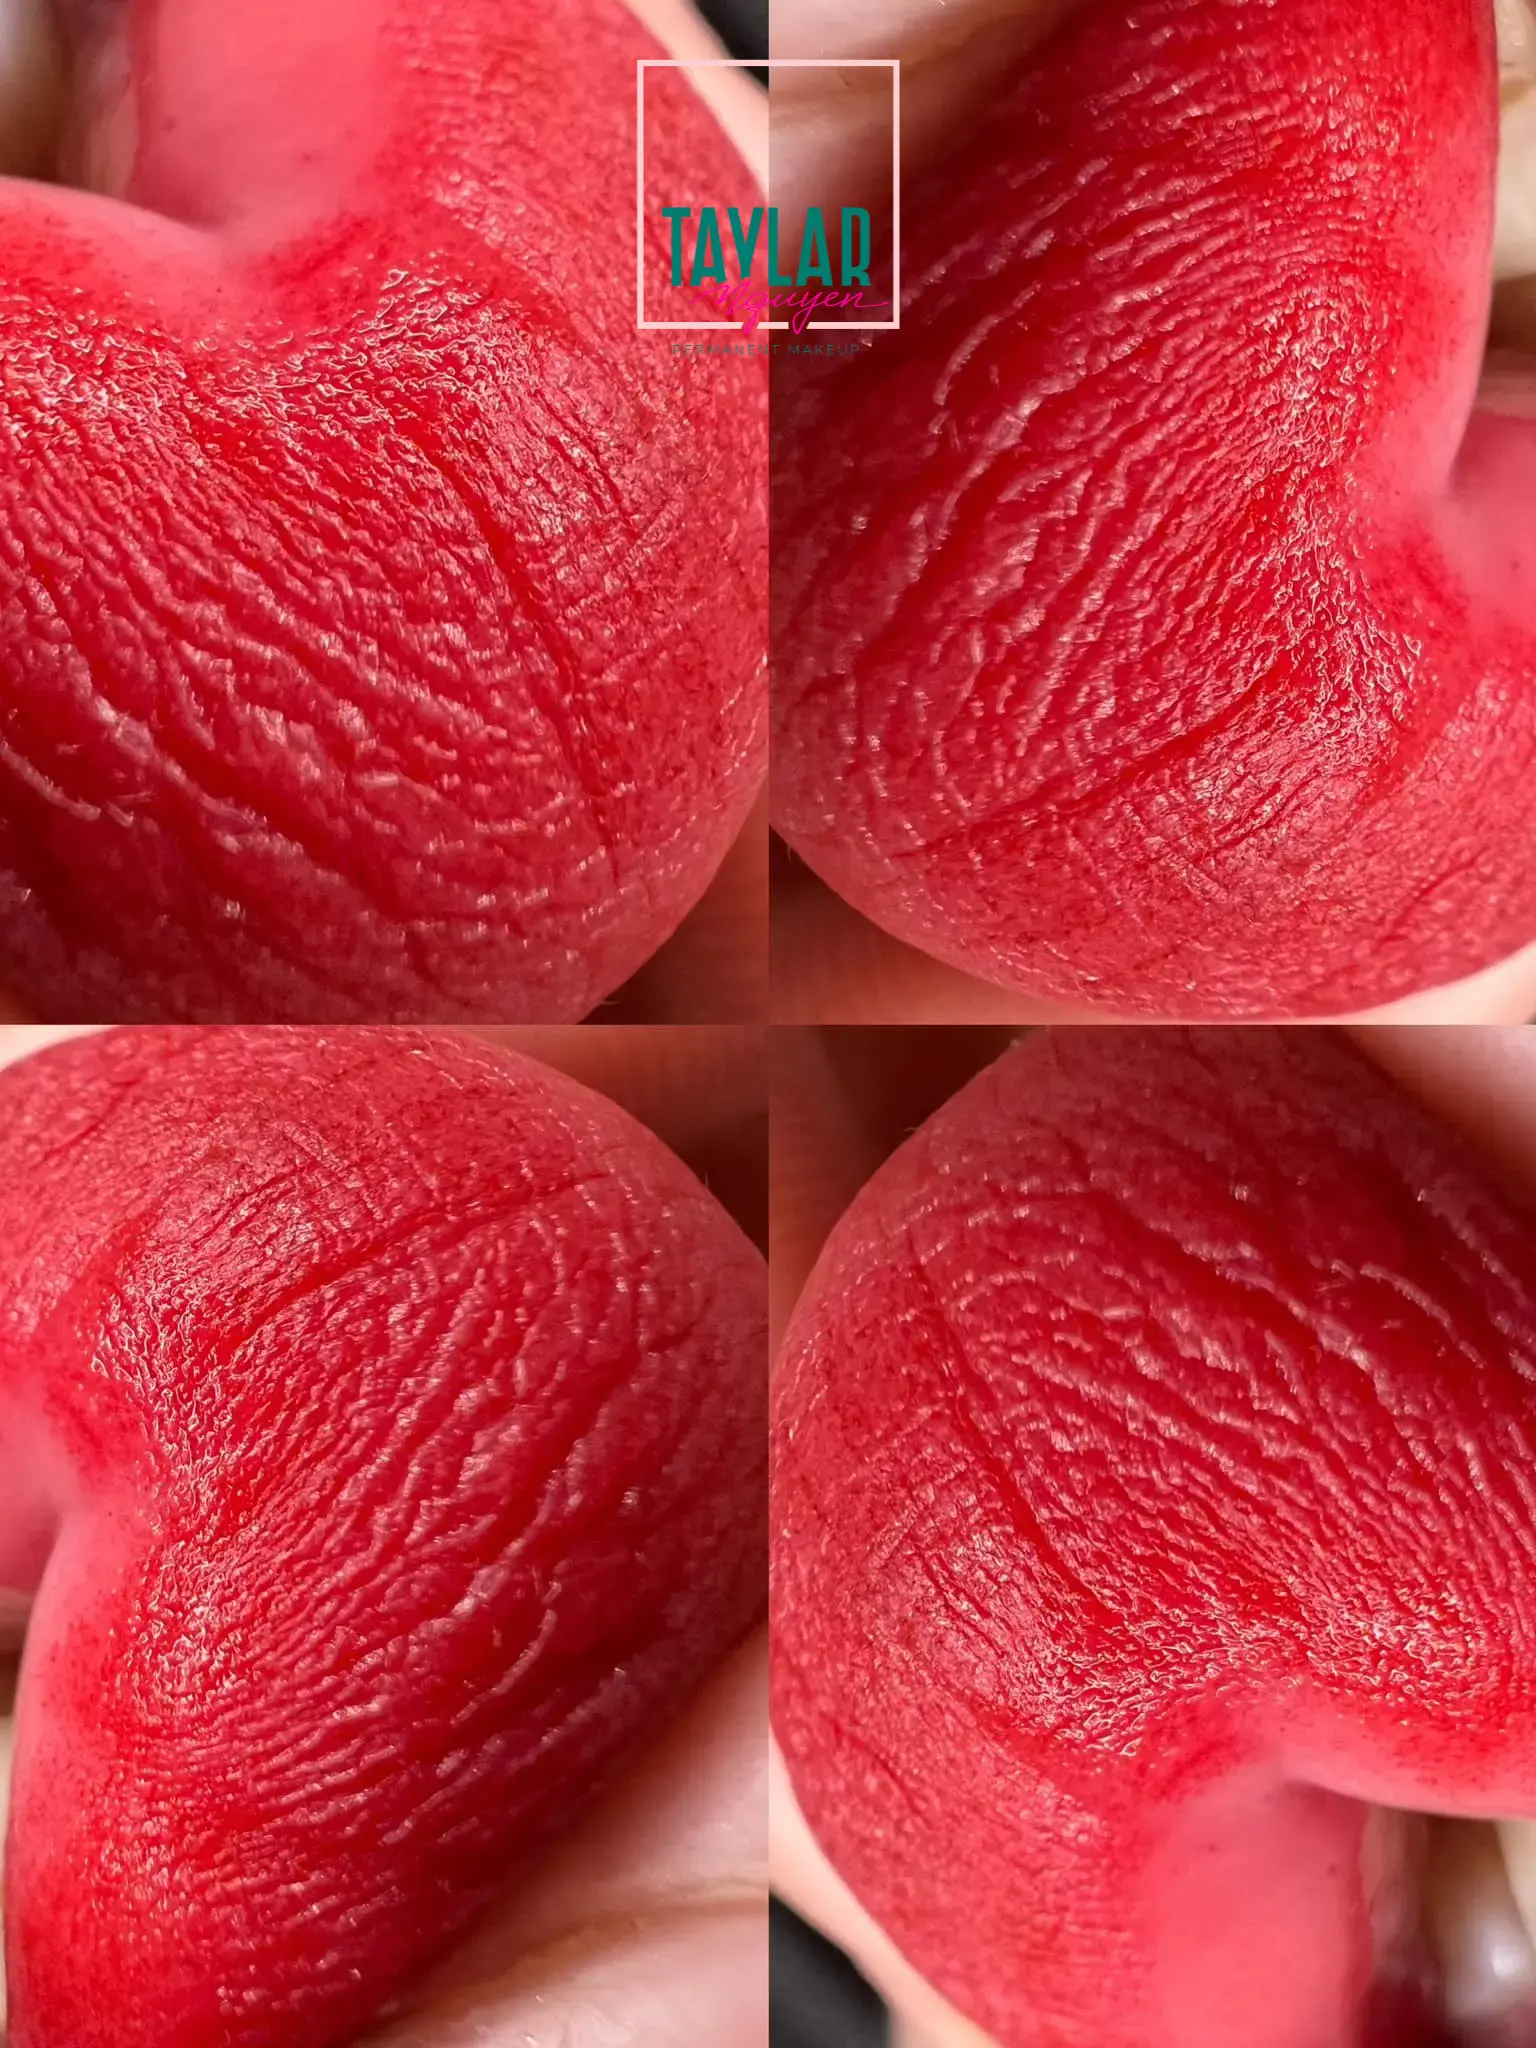 Hình ảnh phun môi màu đỏ cherry sau khi bong lên màu đẹp và chuẩn